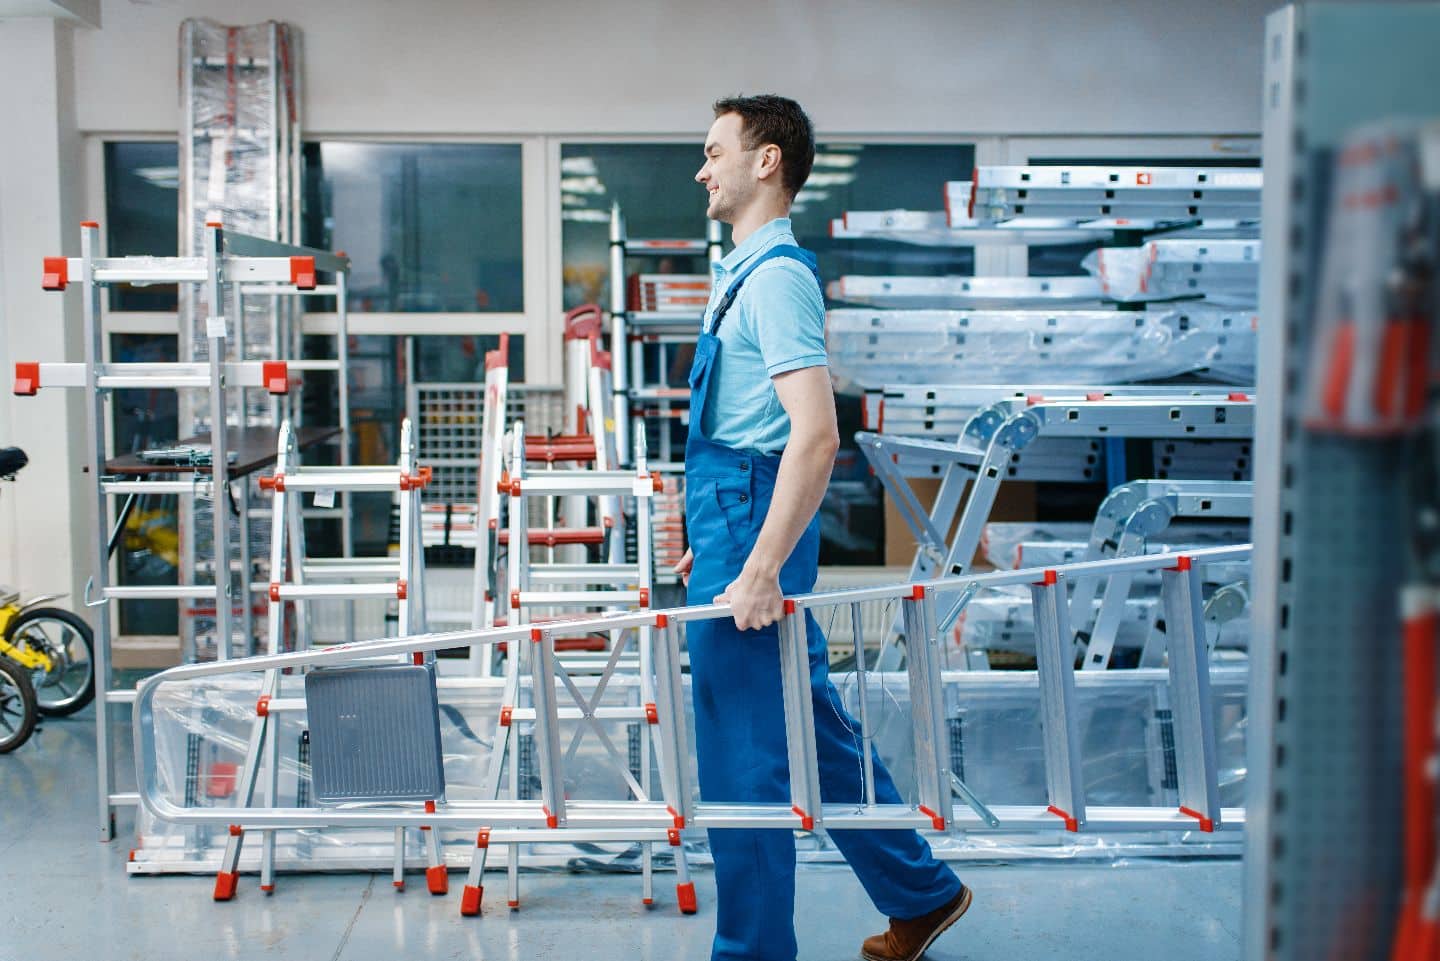 Männlicher Angestellter in Uniform hält neue Aluminium-Stufenleitern im Werkzeugladen. Abteilung mit Leitern, Auswahl an Geräten im Eisenwarengeschäft, Instrumentensupermarkt